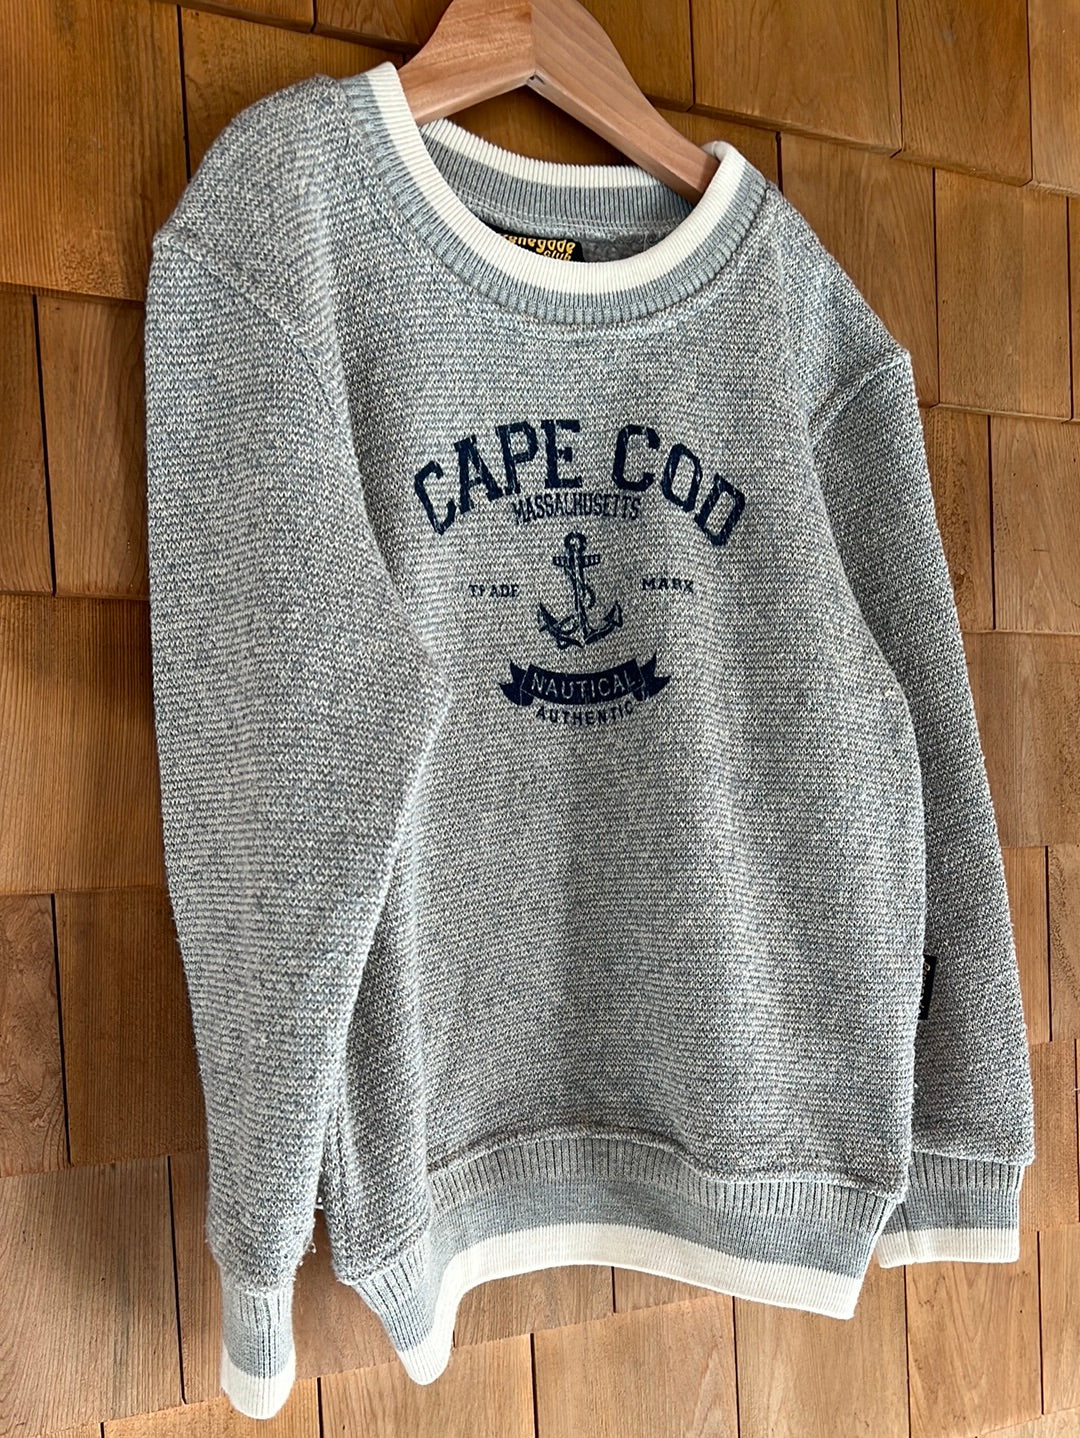 Vintage 90s Cape Cod Crew Neck